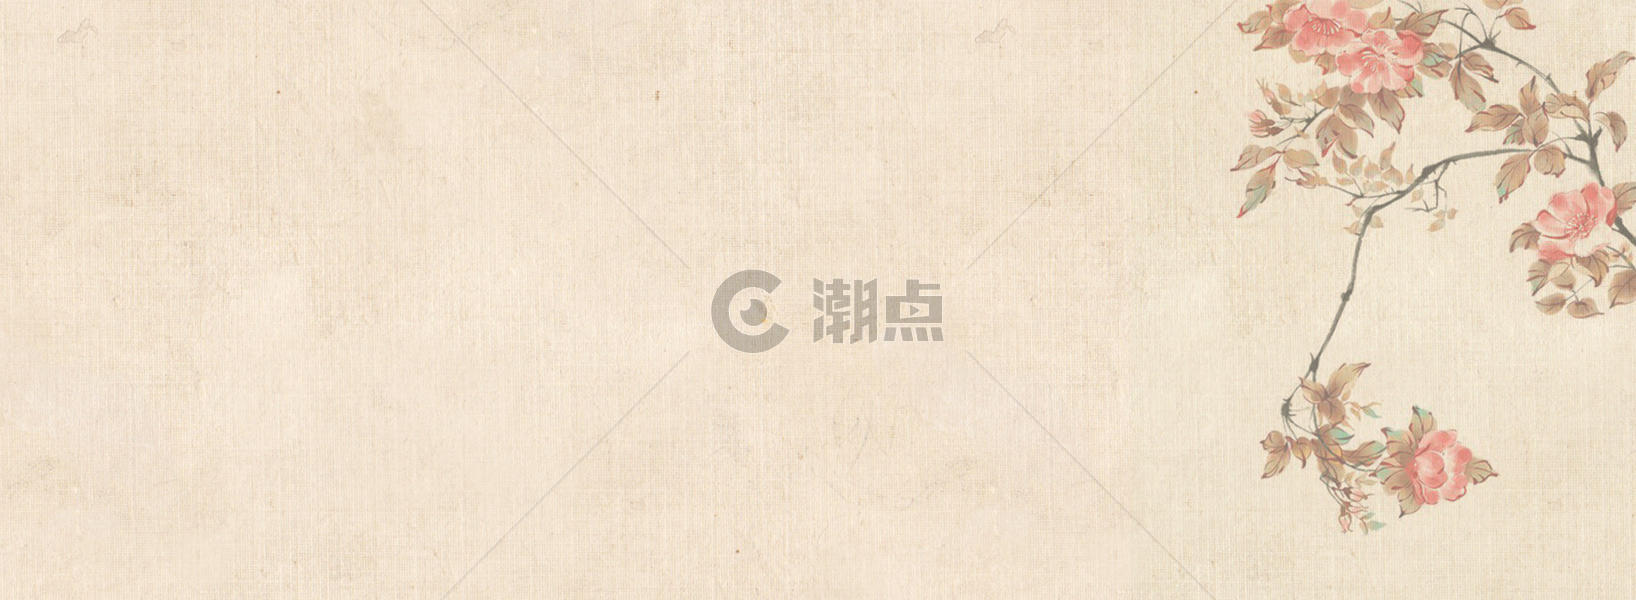 中国风banner图片素材免费下载